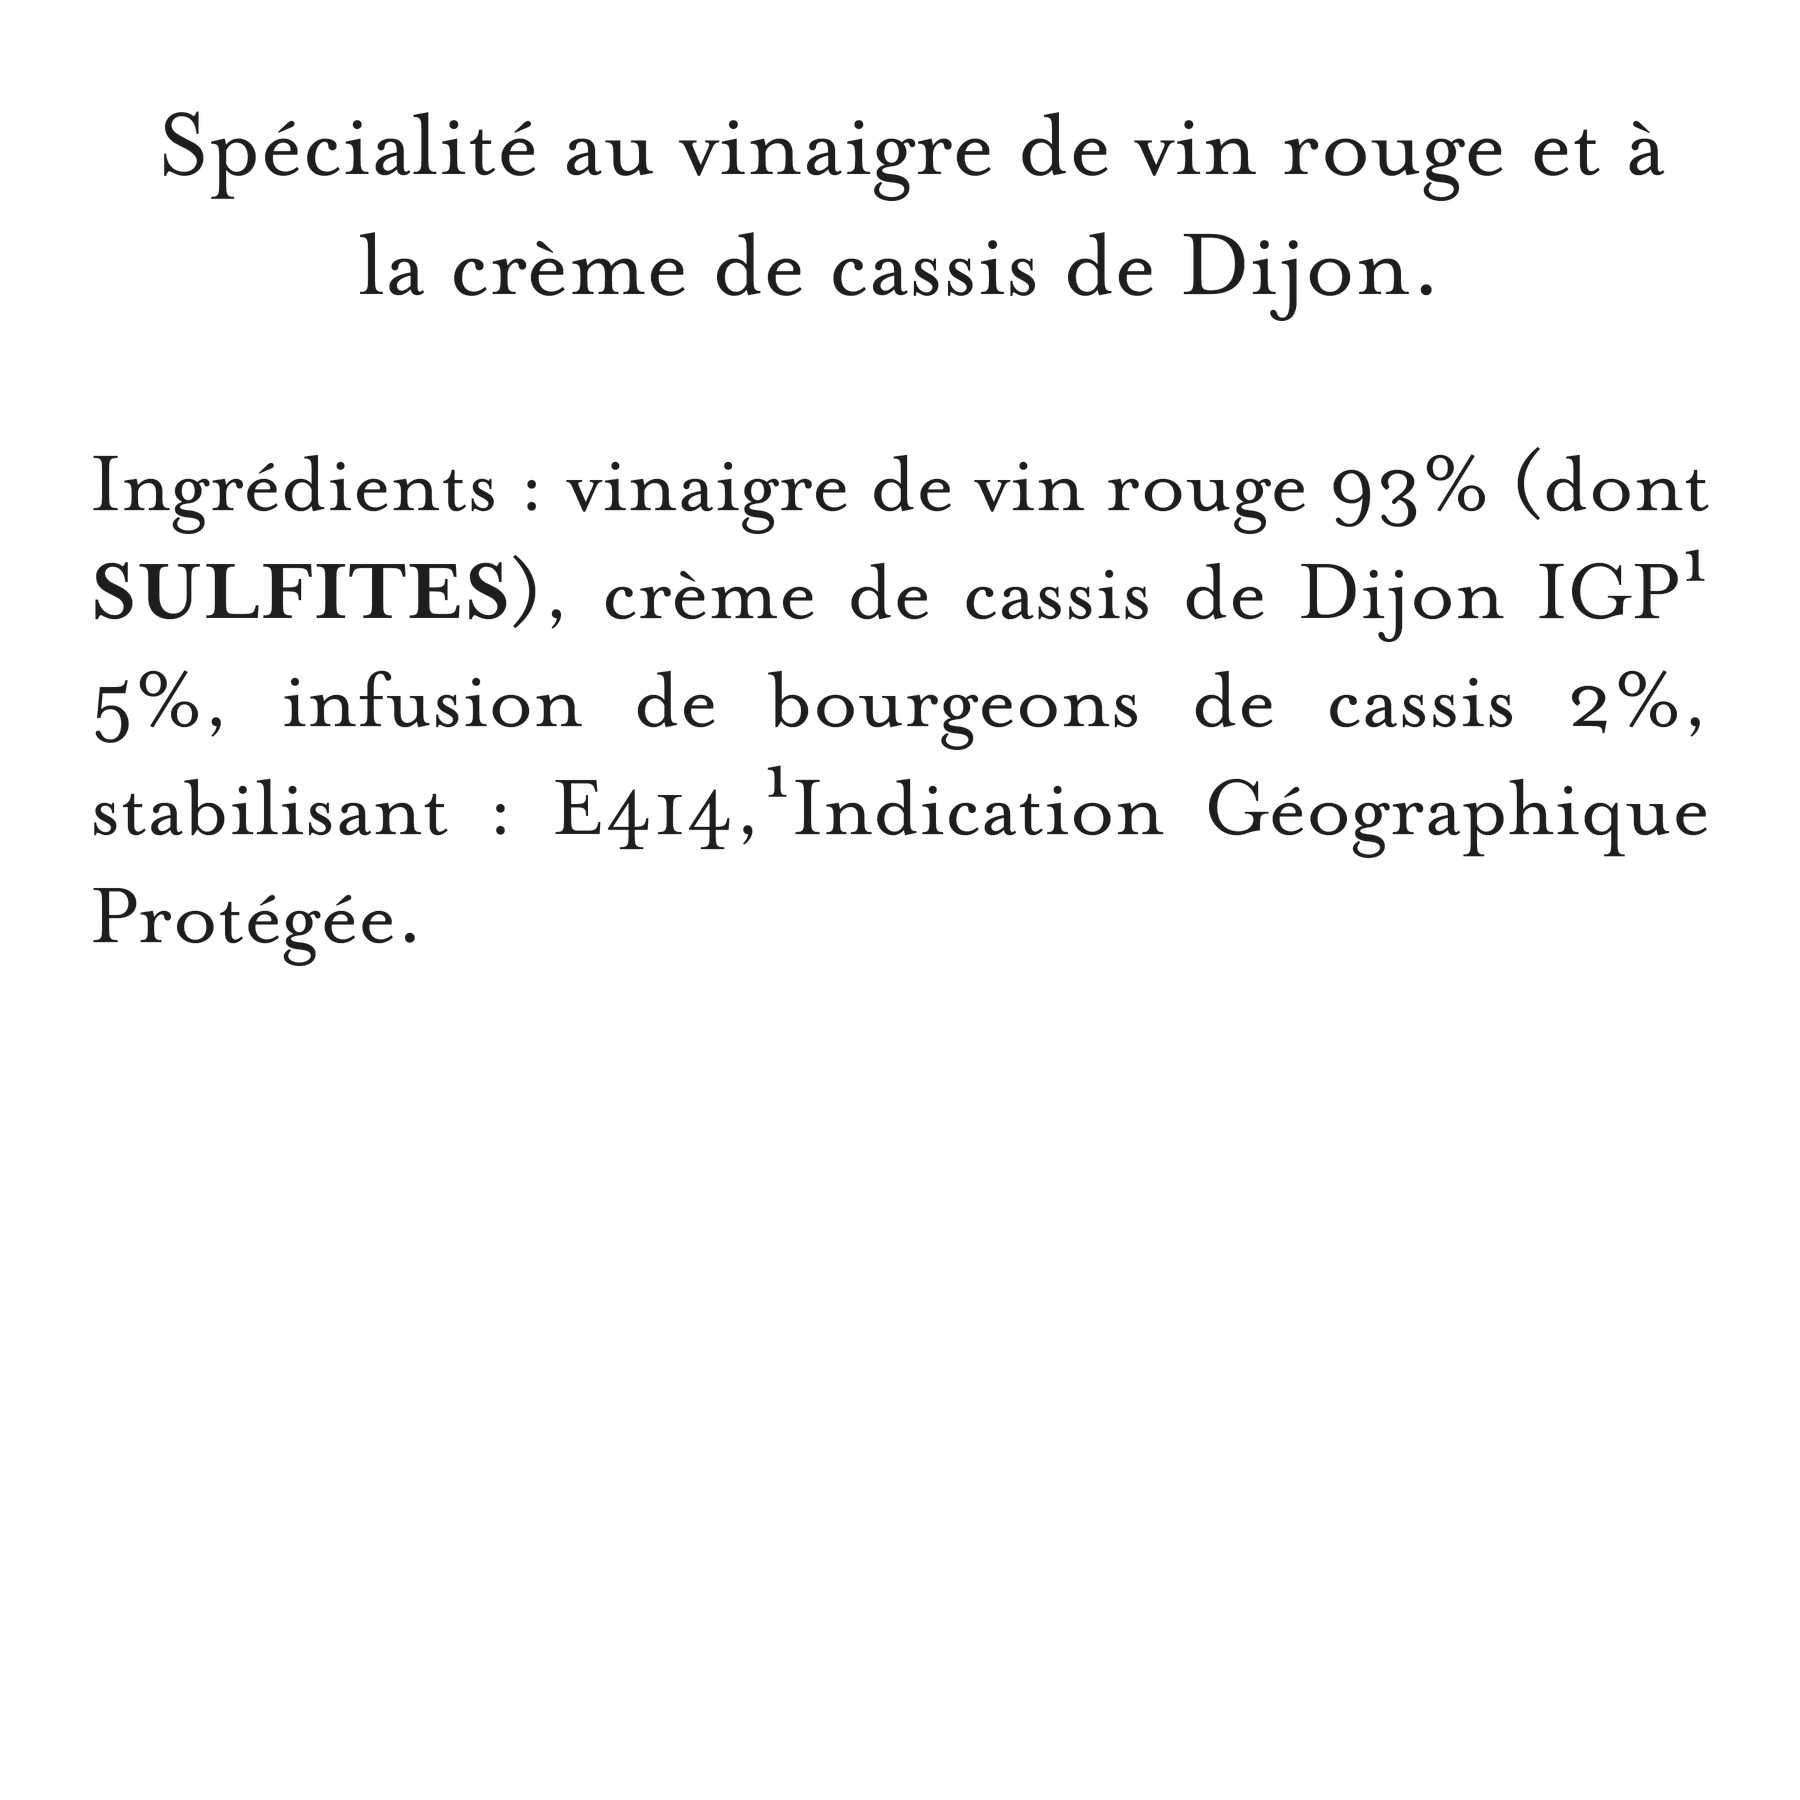 Maille - Specialite au vinaigre de vin et a la creme de cassis de dijon, 250 ml, description